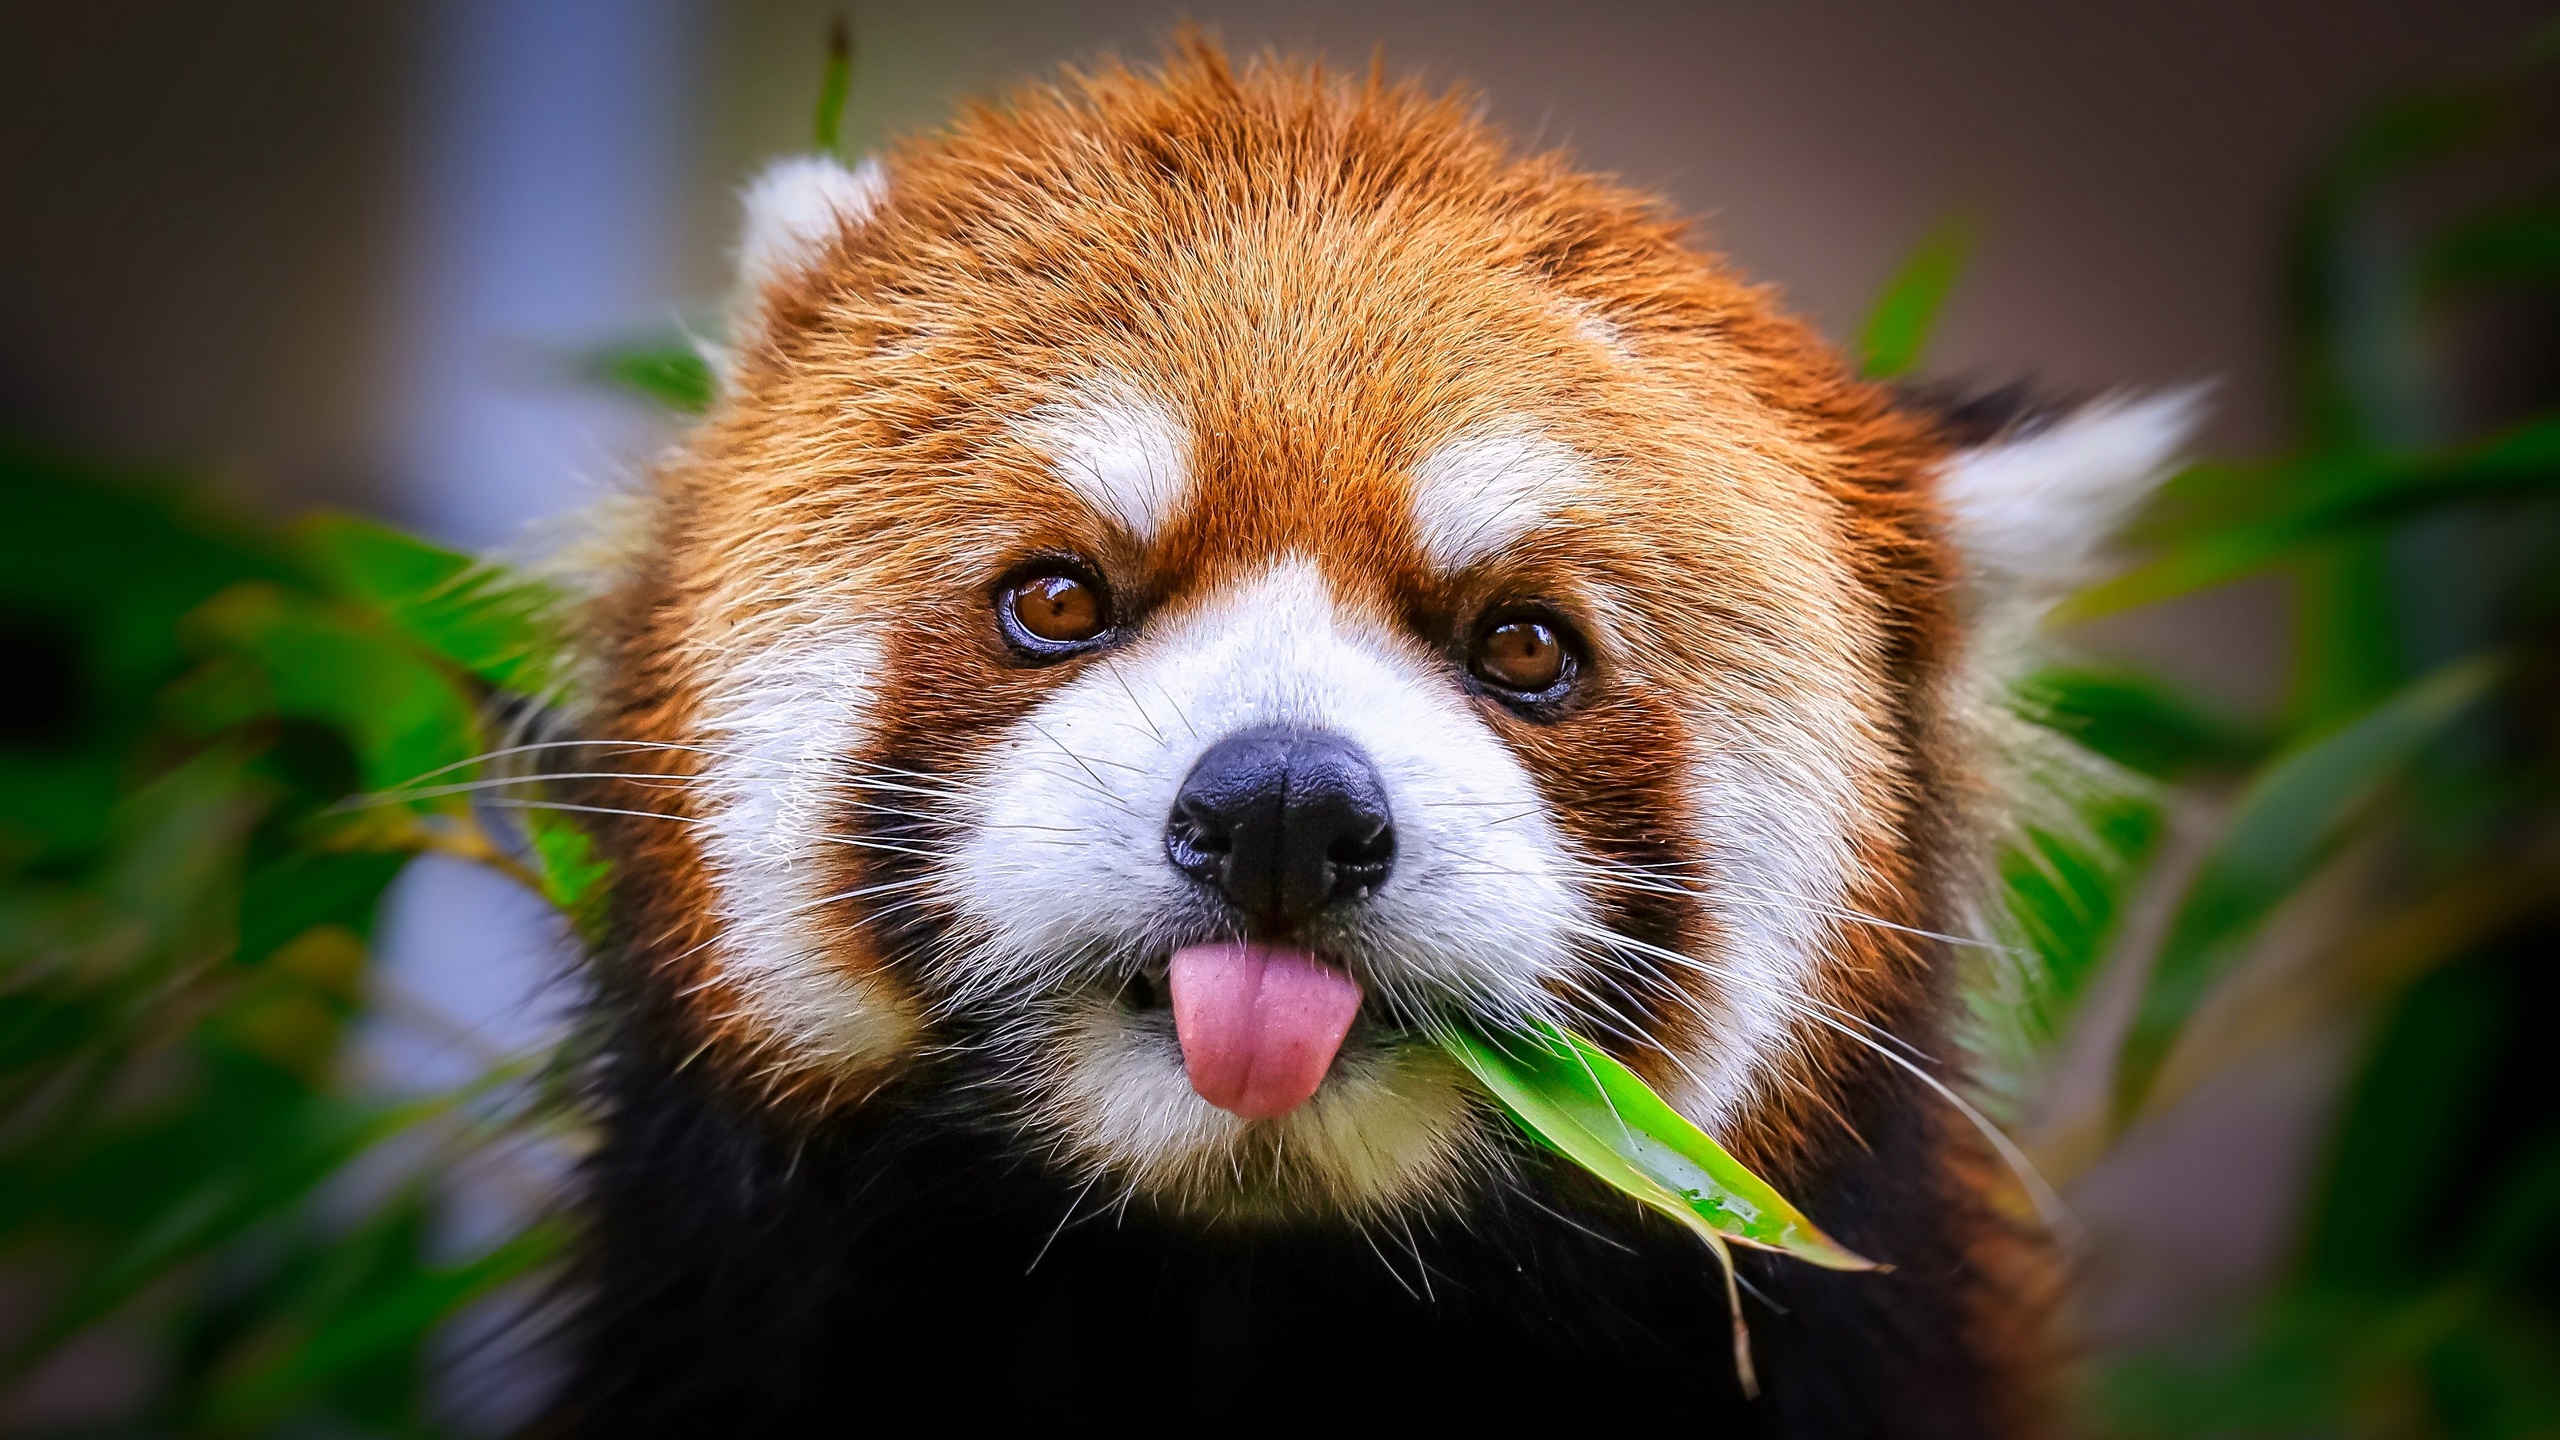 General 2560x1440 red panda tongues tongue out animals mammals closeup